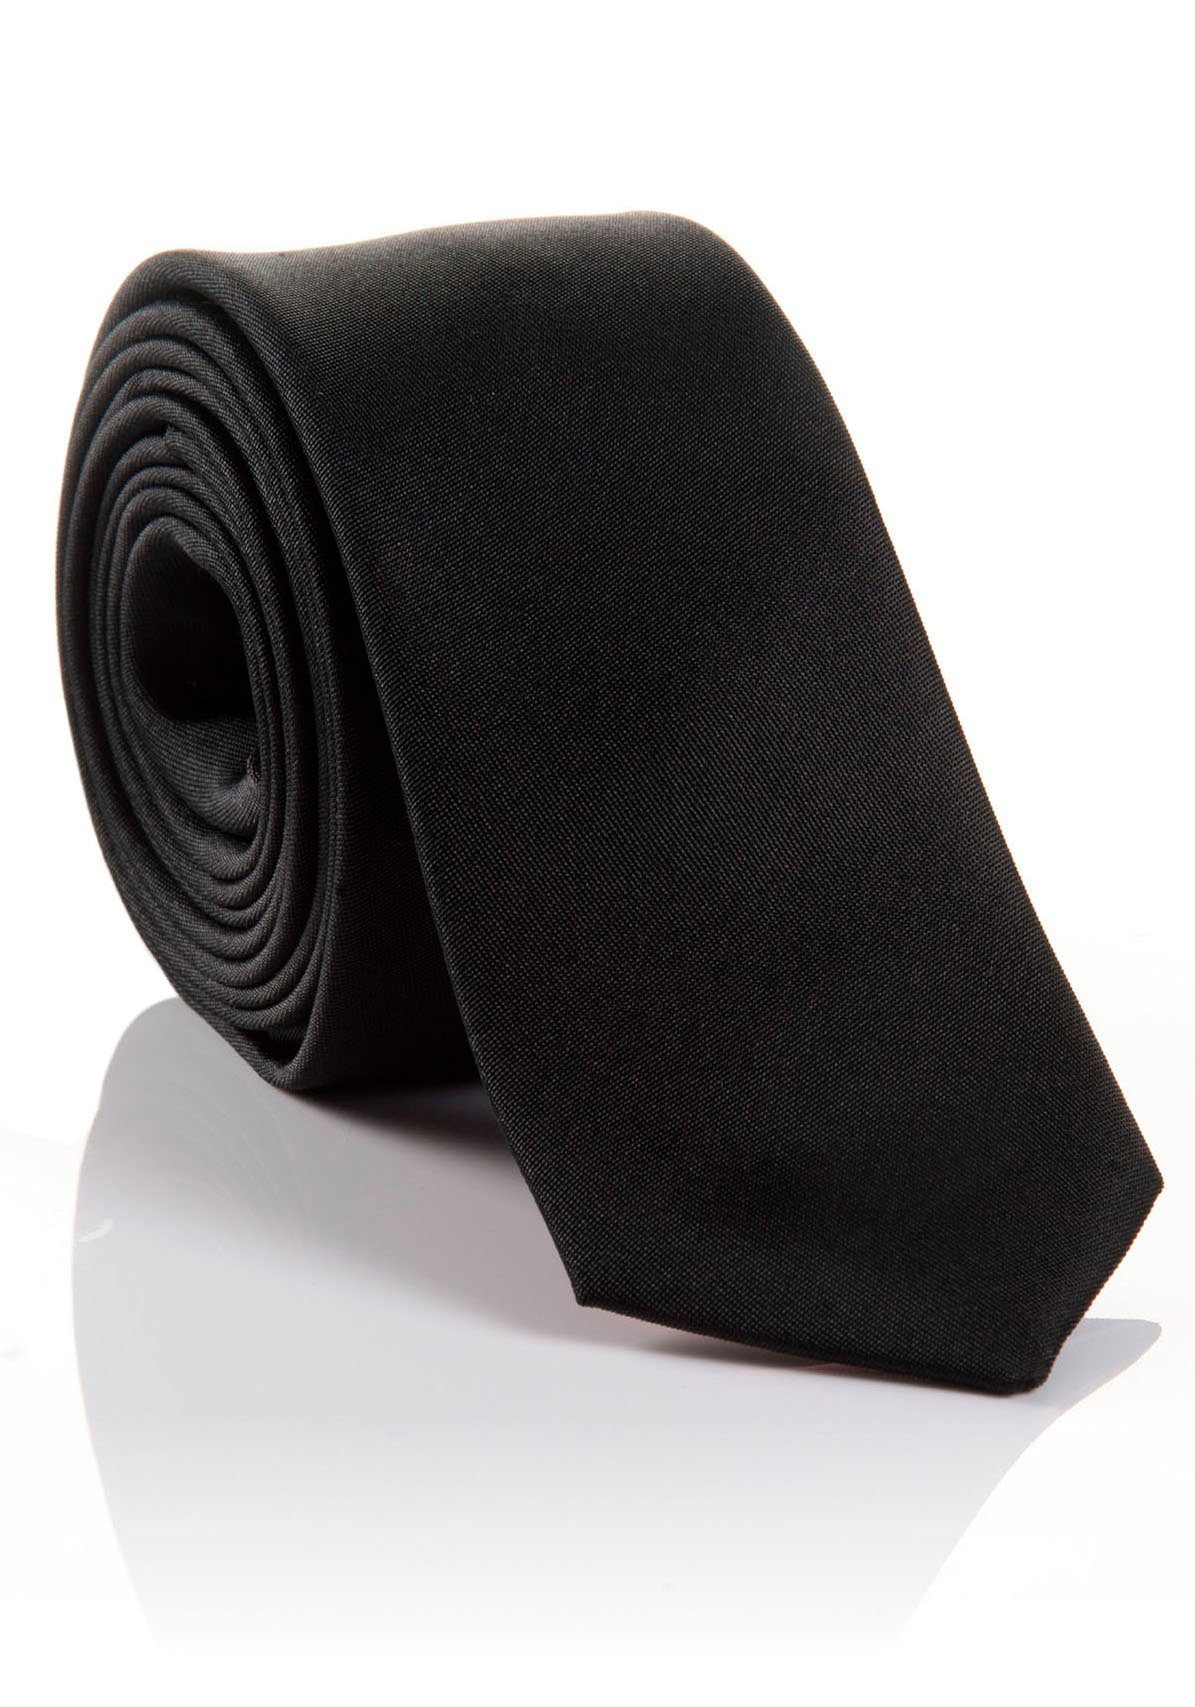 Seidenkrawatte LORENZO Hochwertig Krawatte hohem mit Tragekomfort verarbeitete MONTI black